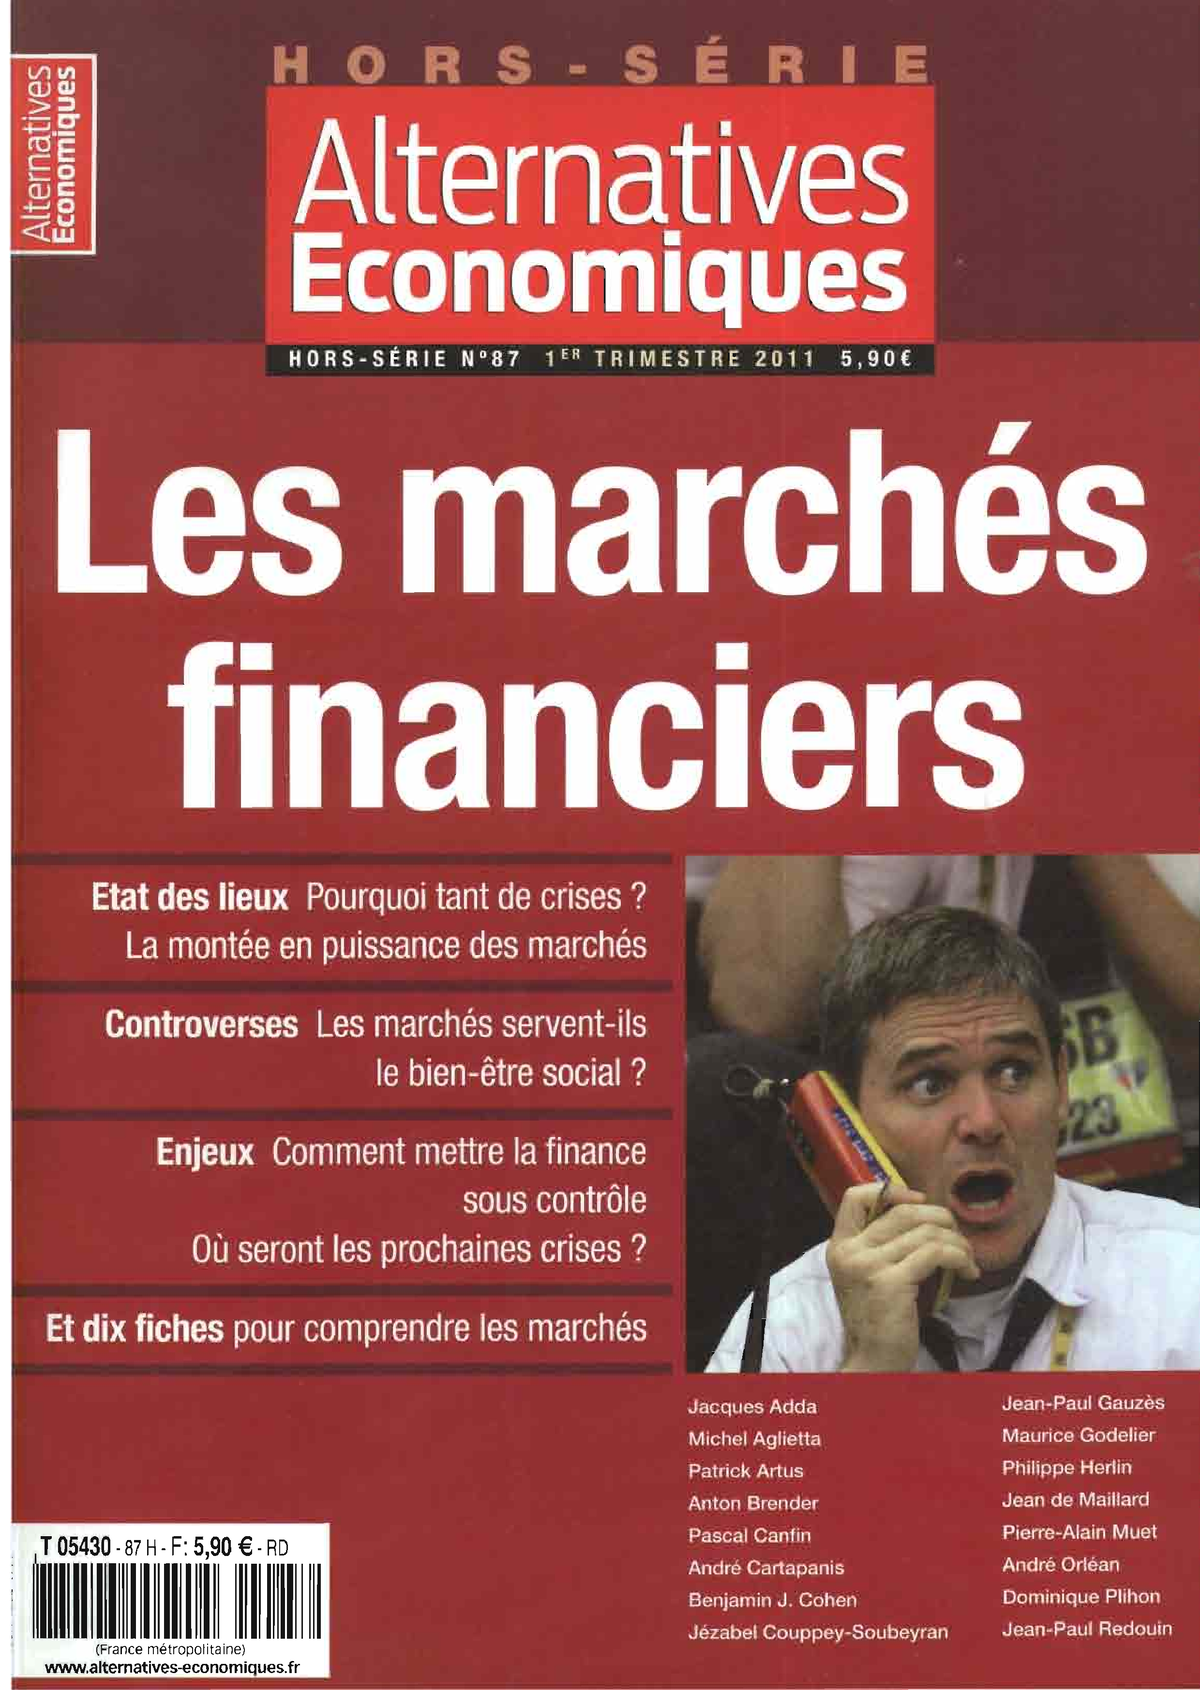 Les marchés financiers (Alternatives Economiques - Hors Serie N°87 ...